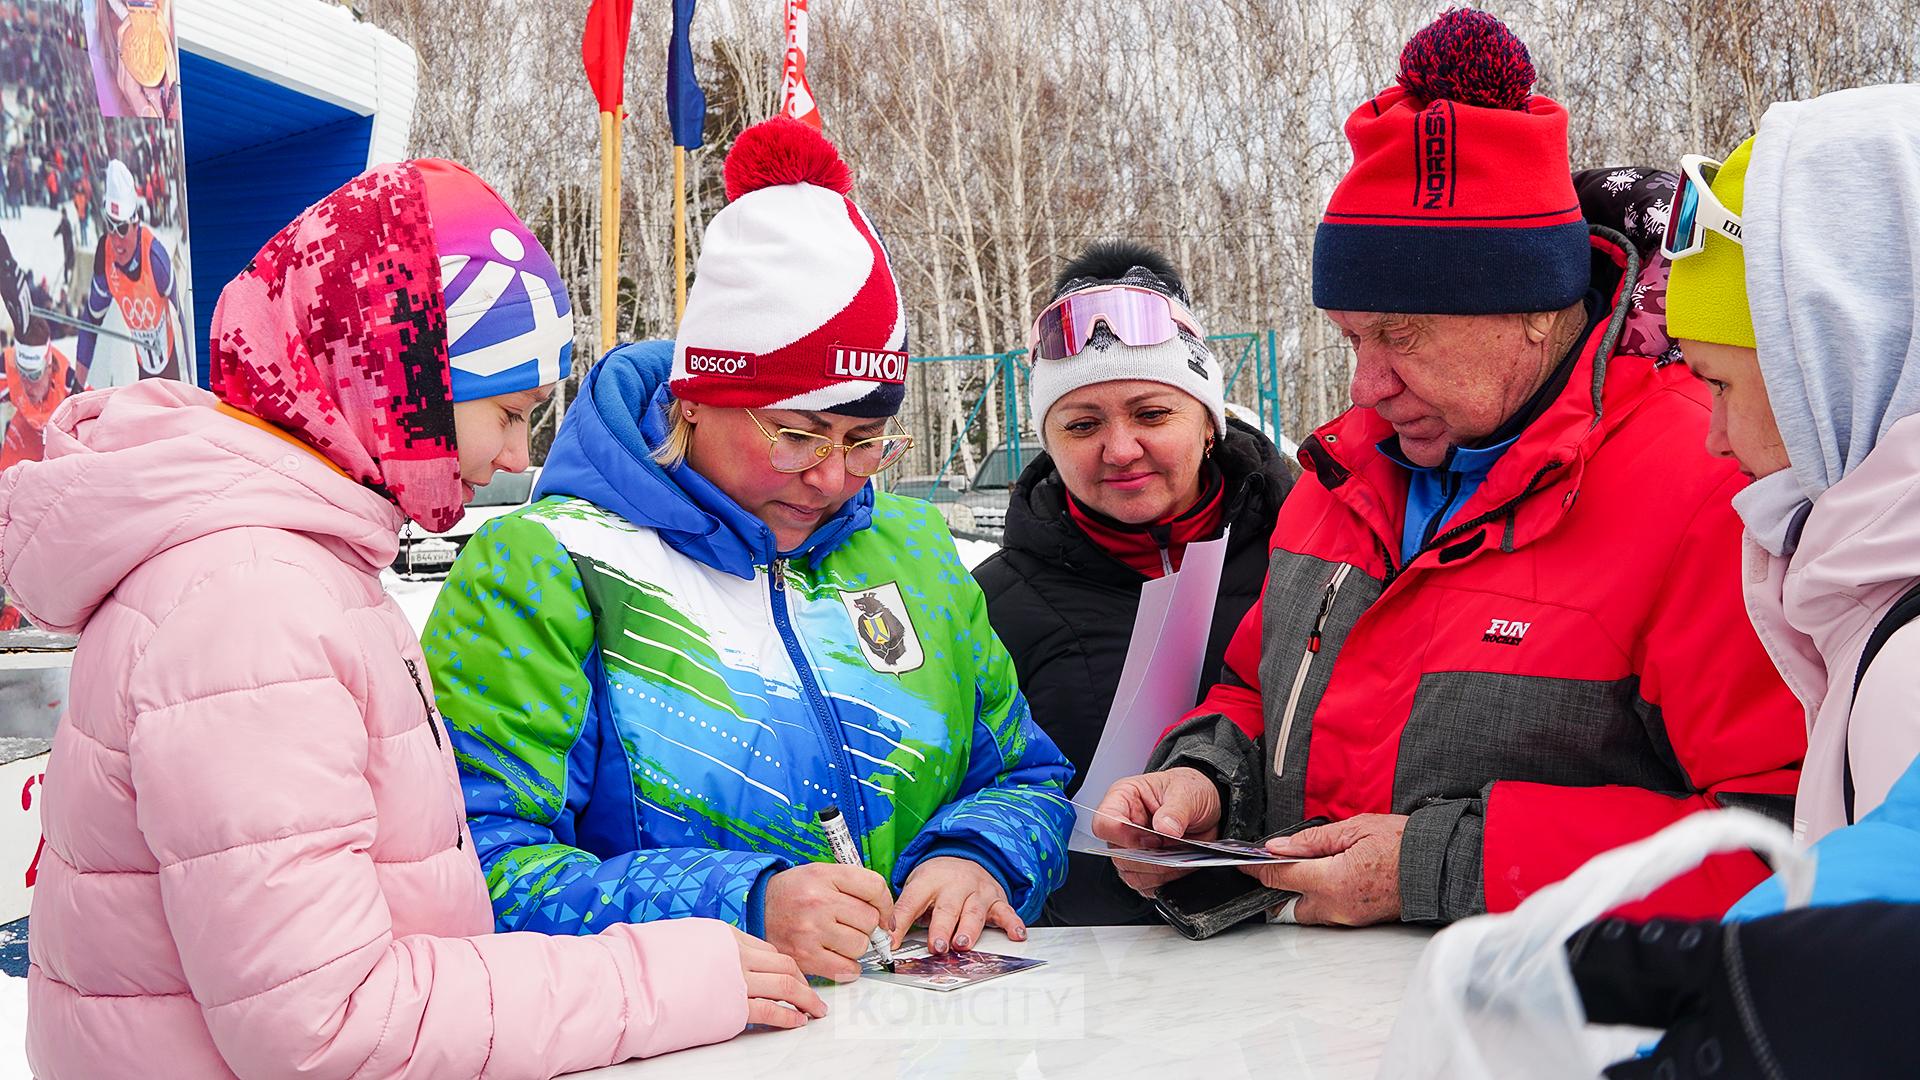 Юлия Чепалова раздала автографы на юношеских соревнованиях на Снежинке